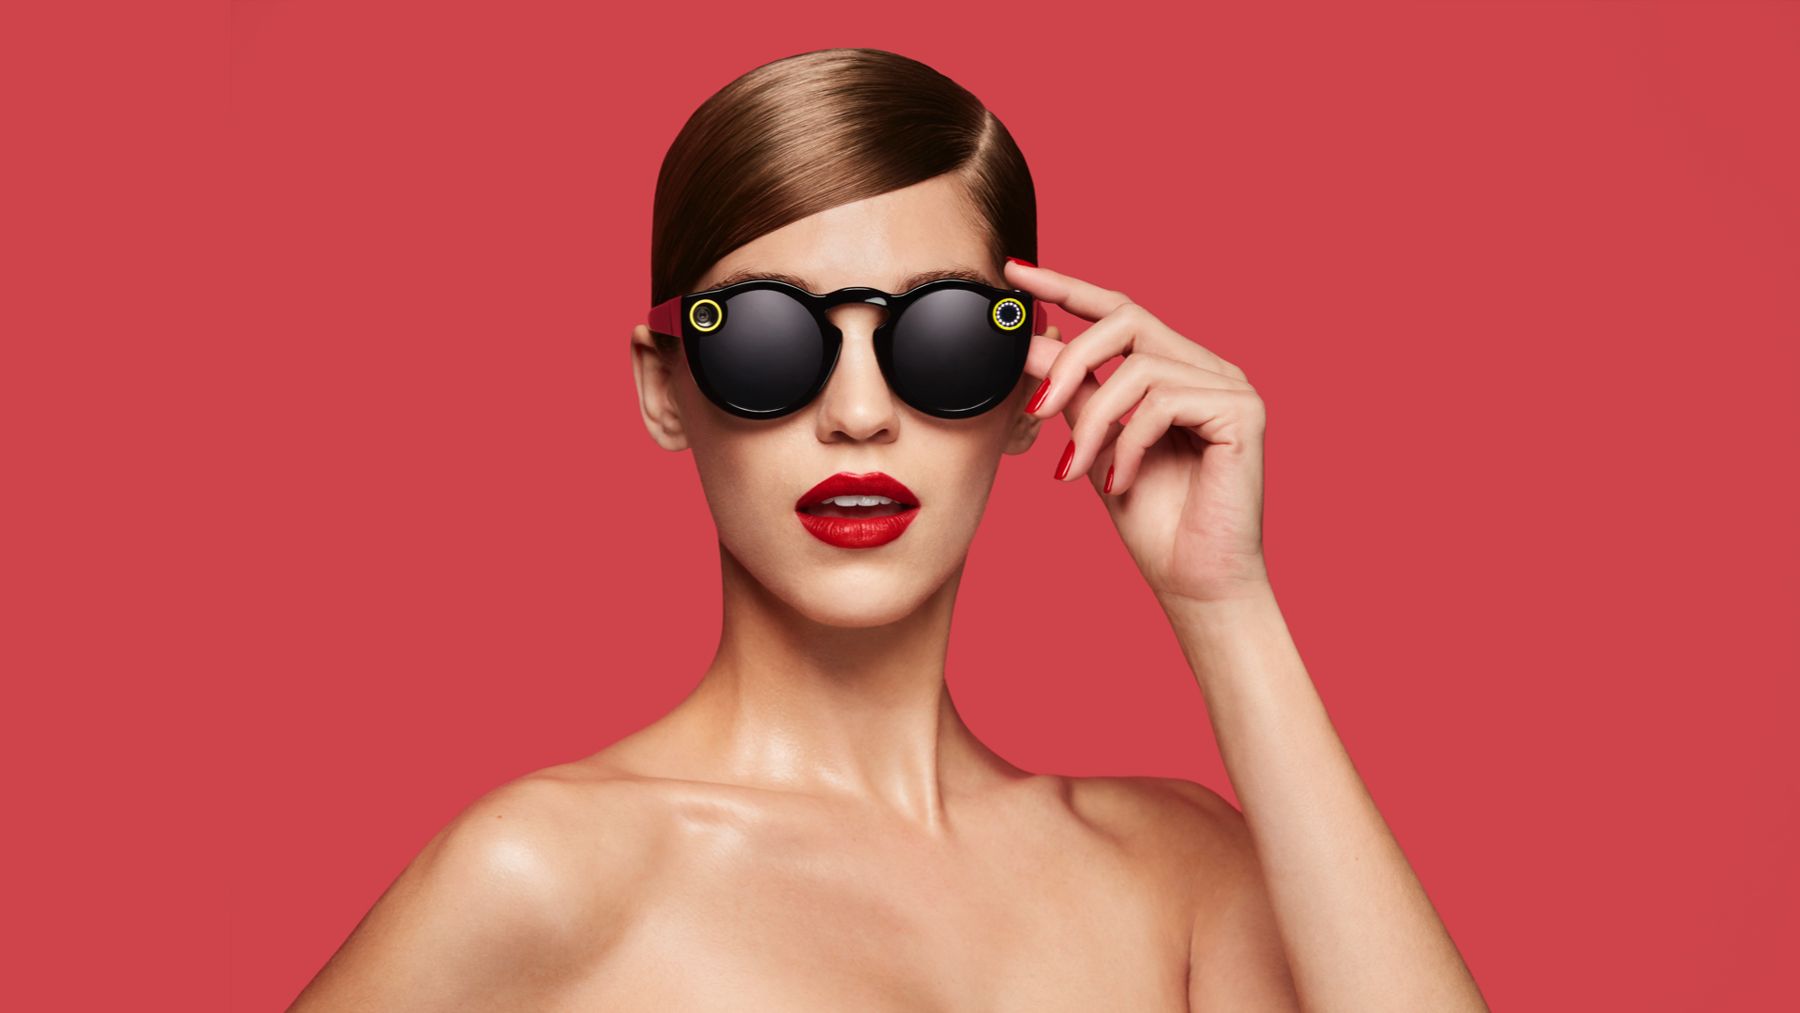 Очки Snapchat теперь доступны - но что они из себя представляют?